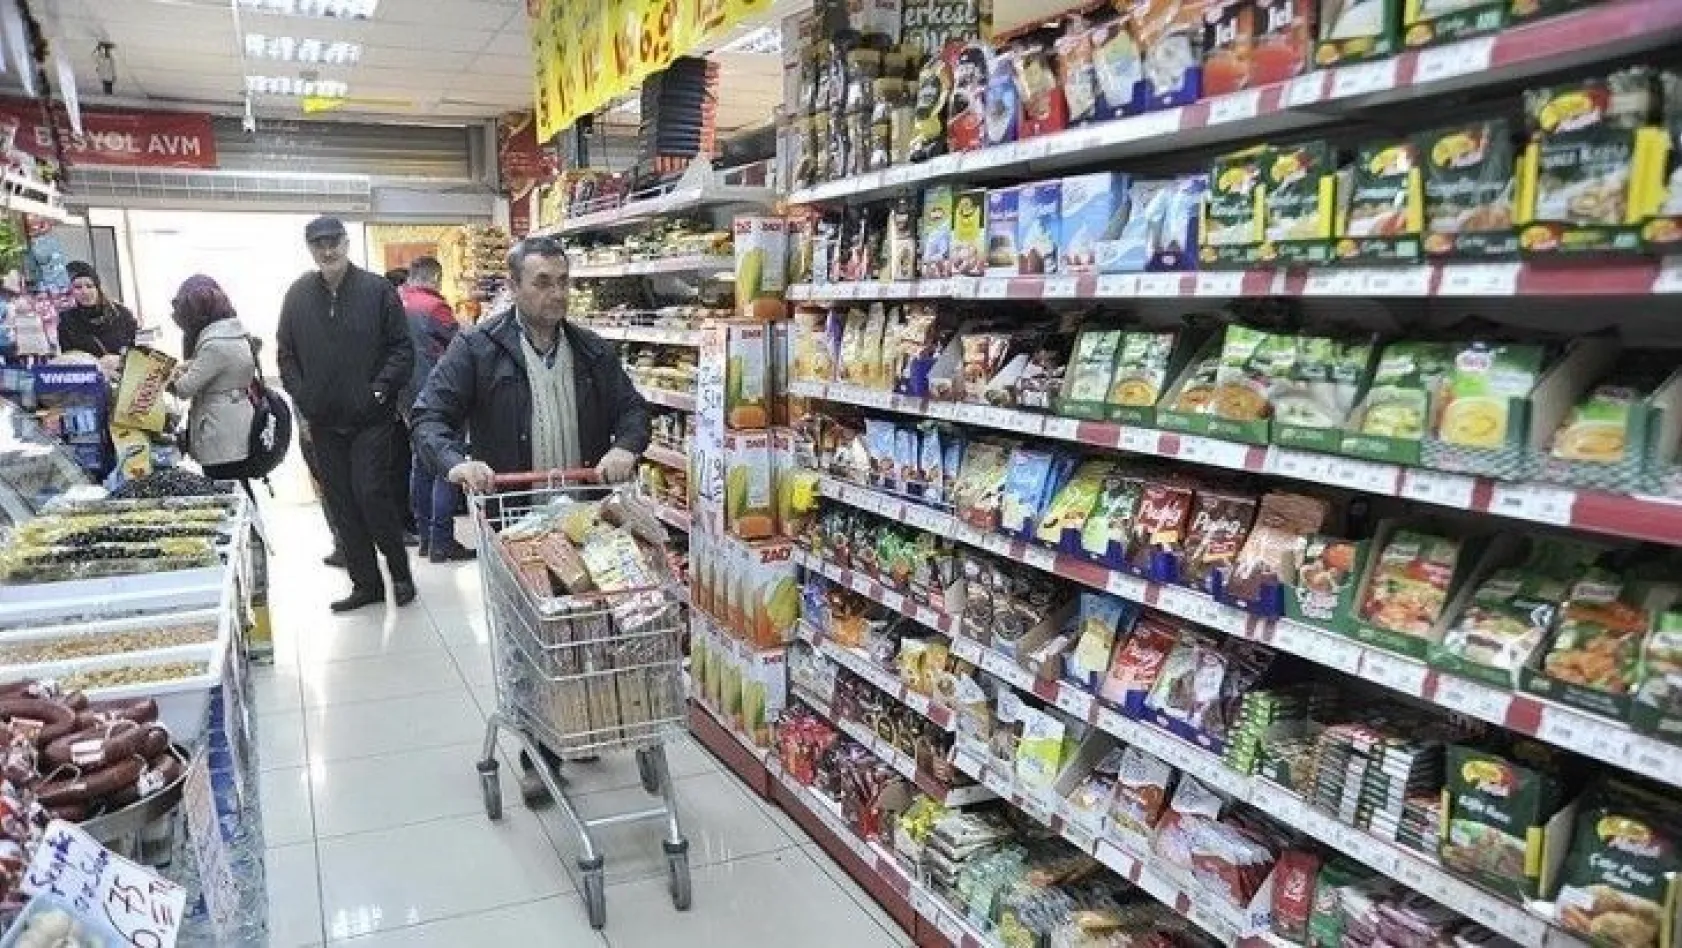 Türk halkı market alışverişinde son dakikacı